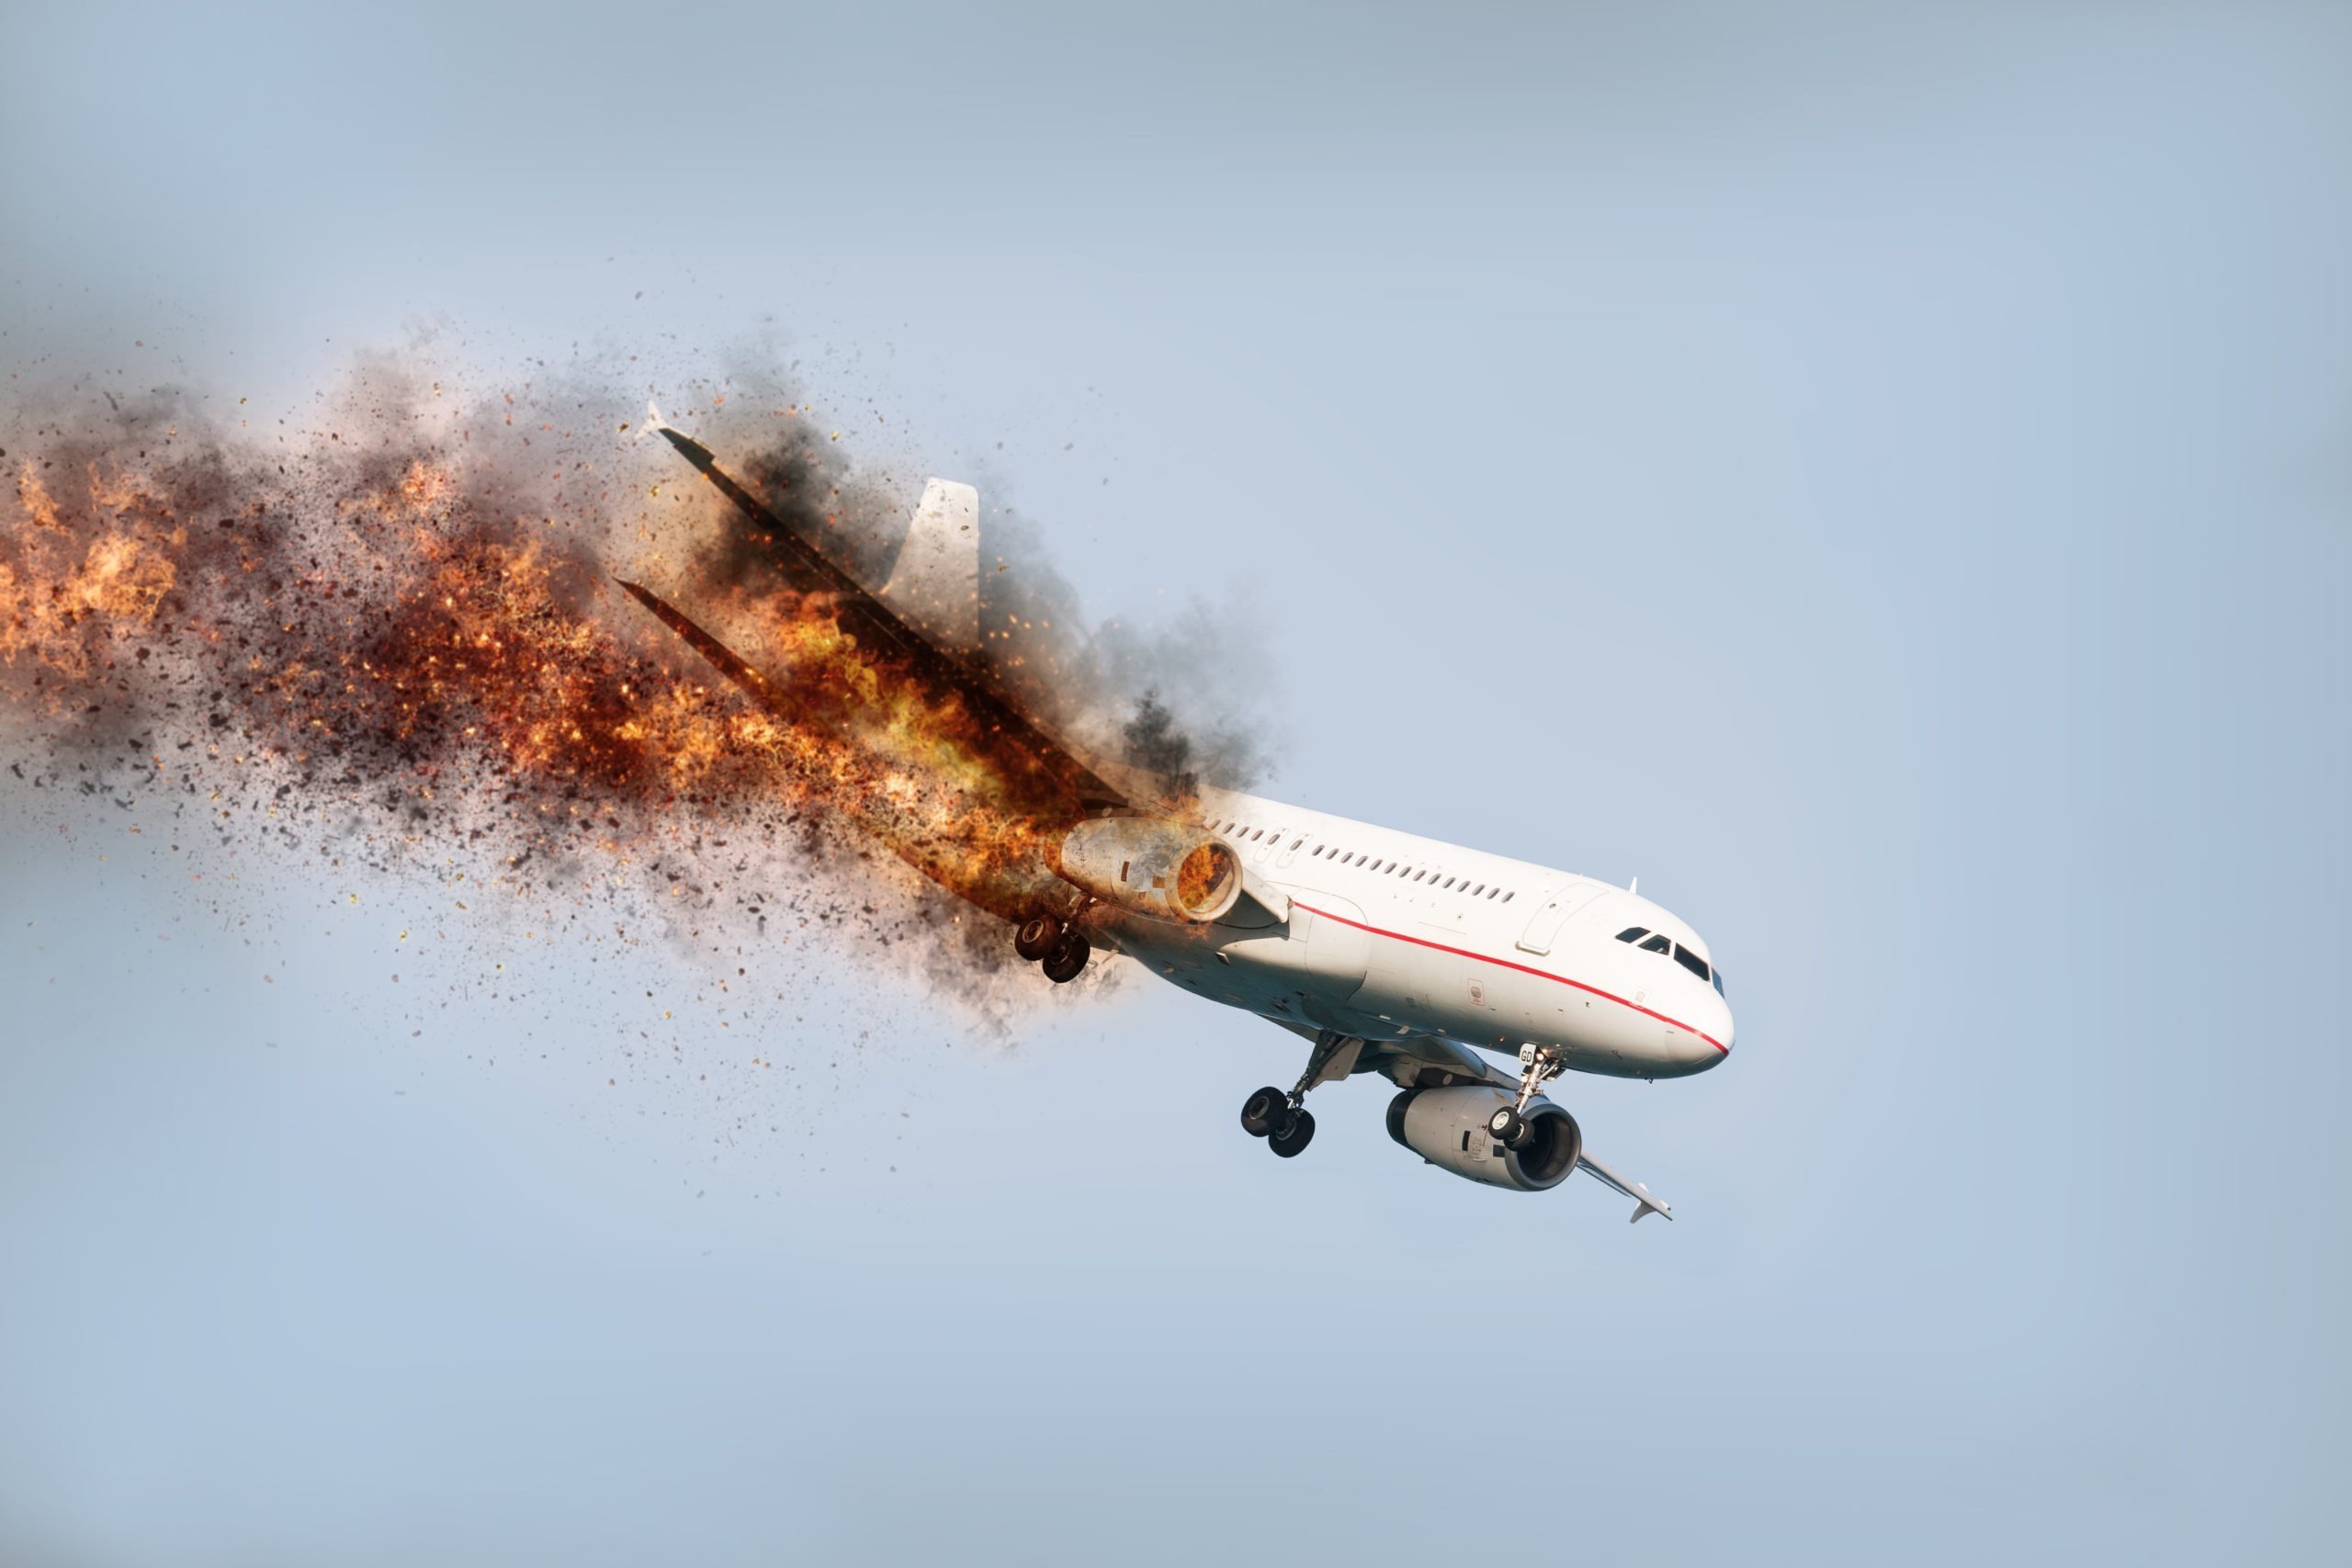 Ютуб авиакатастрофы. Боинг-777" авифкатастрофа. Падающий горящий самолет. Самолет падает в воздухе.